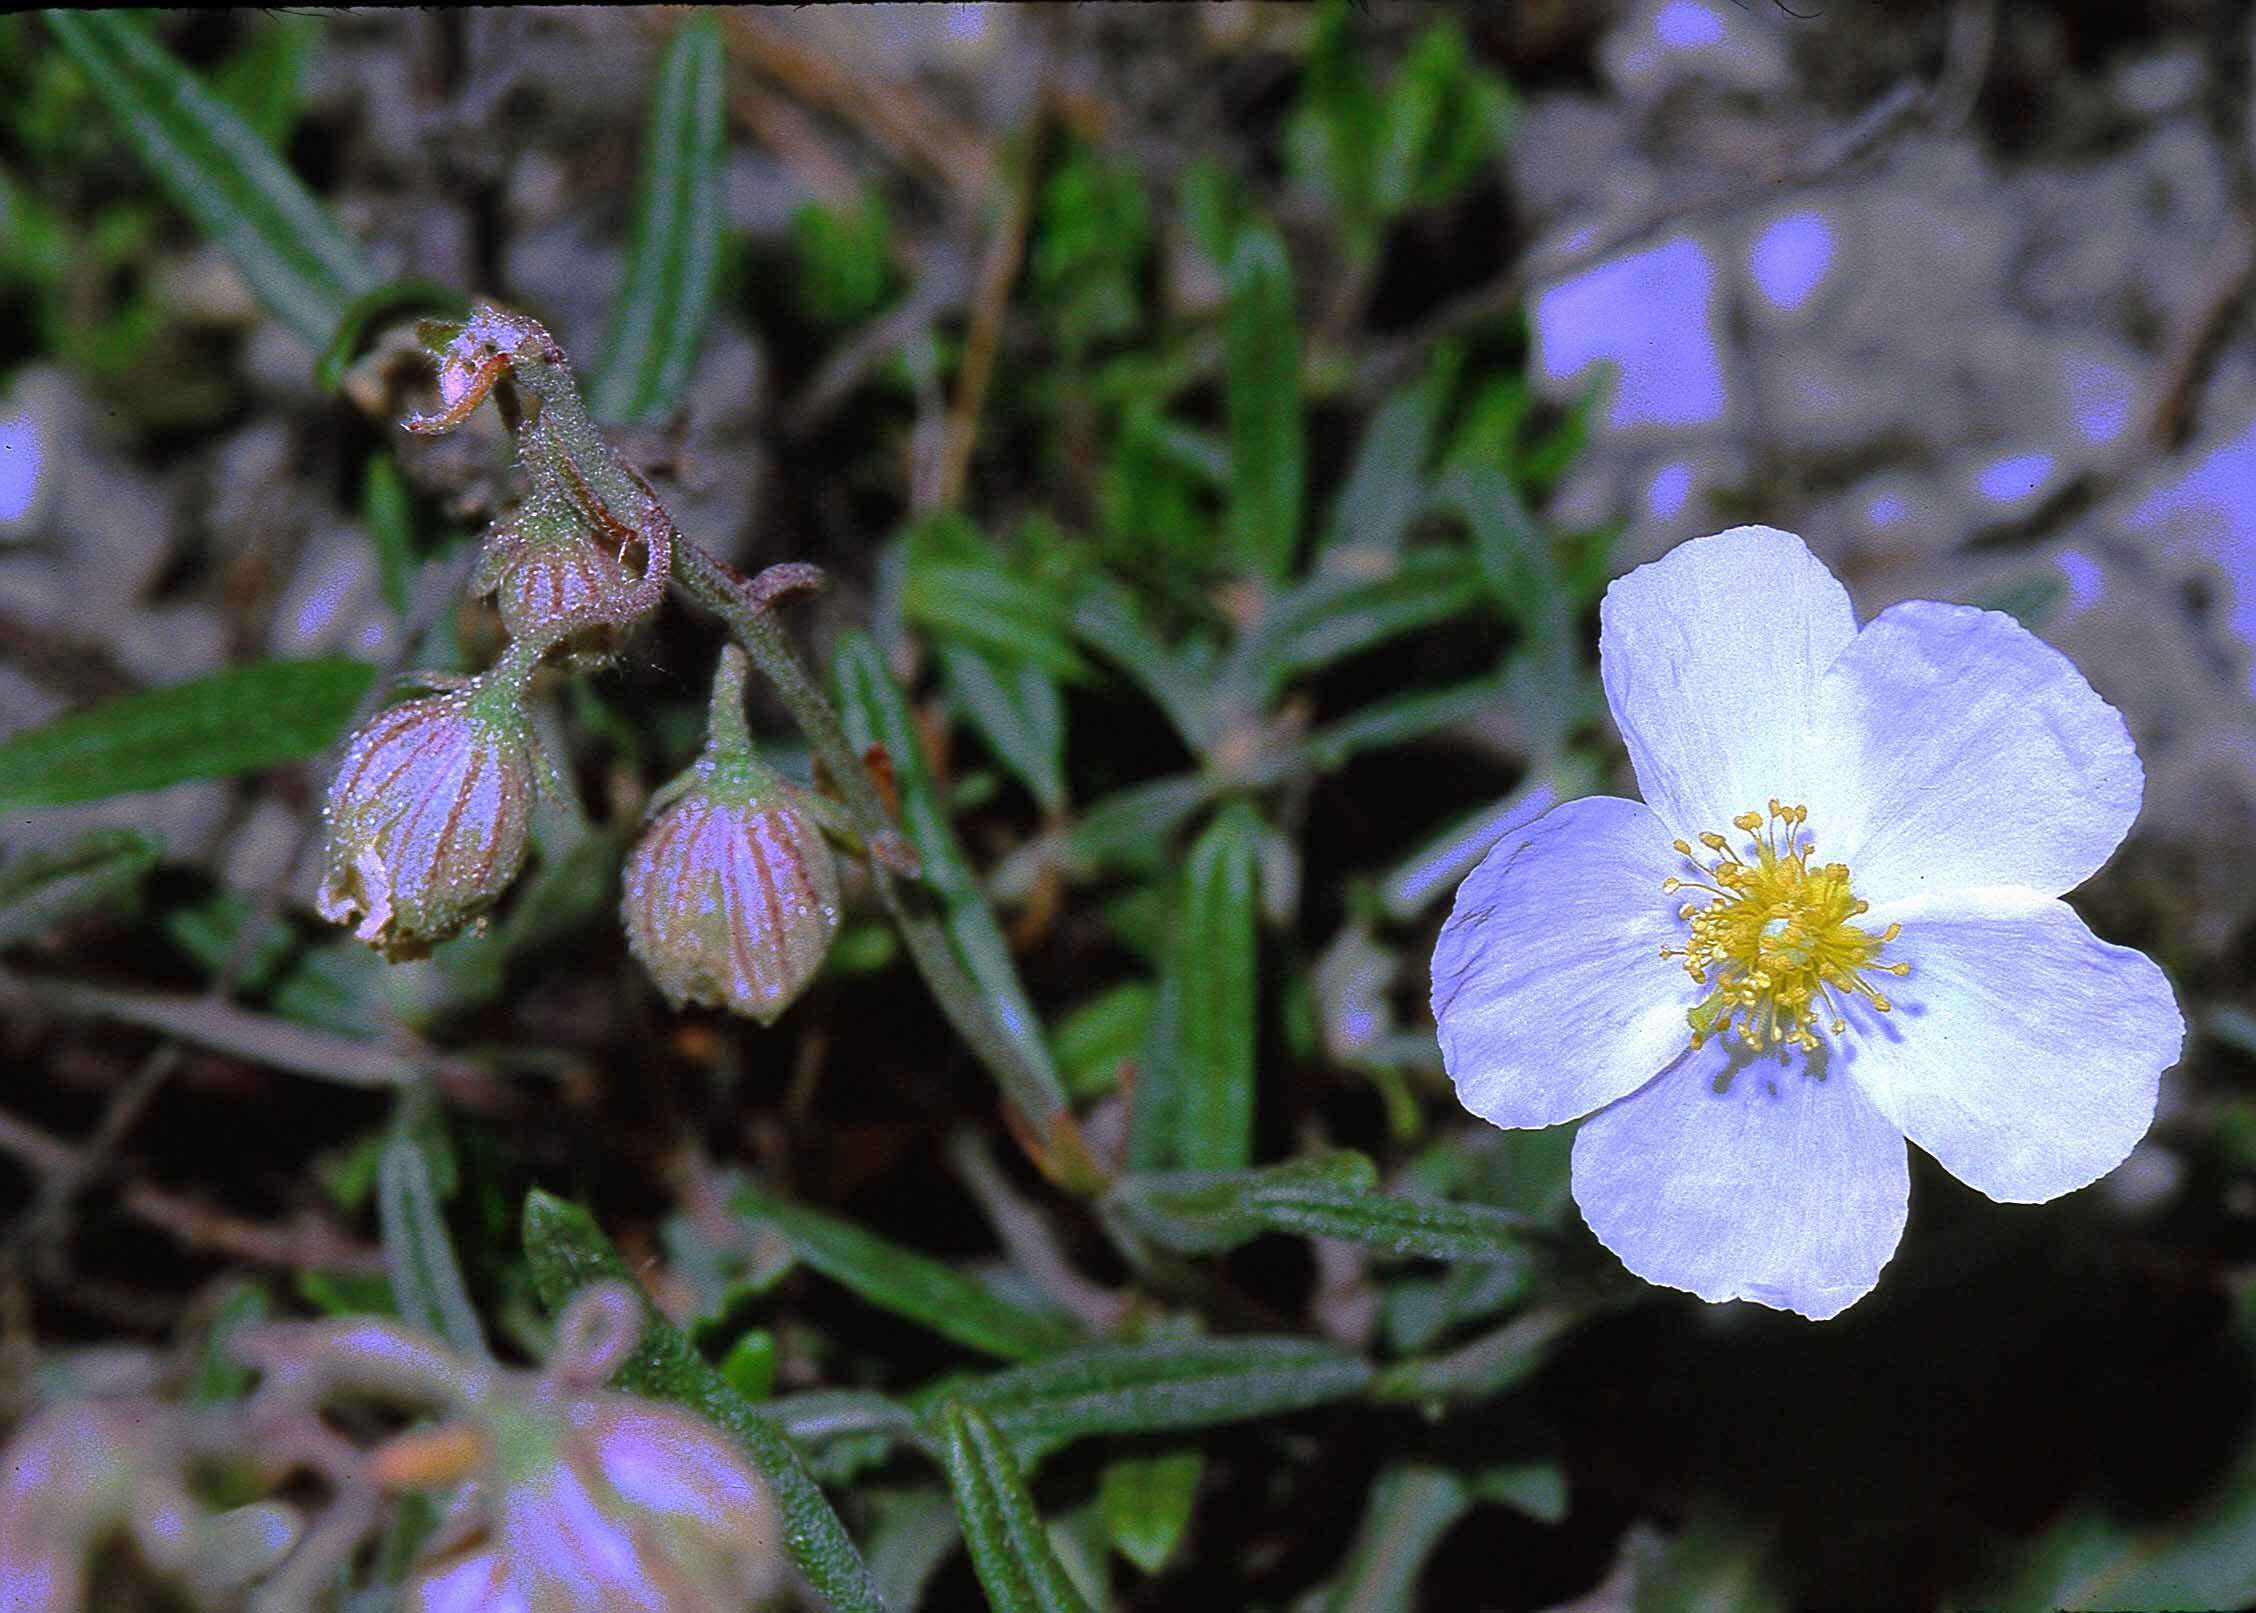 Image of White Rock-rose